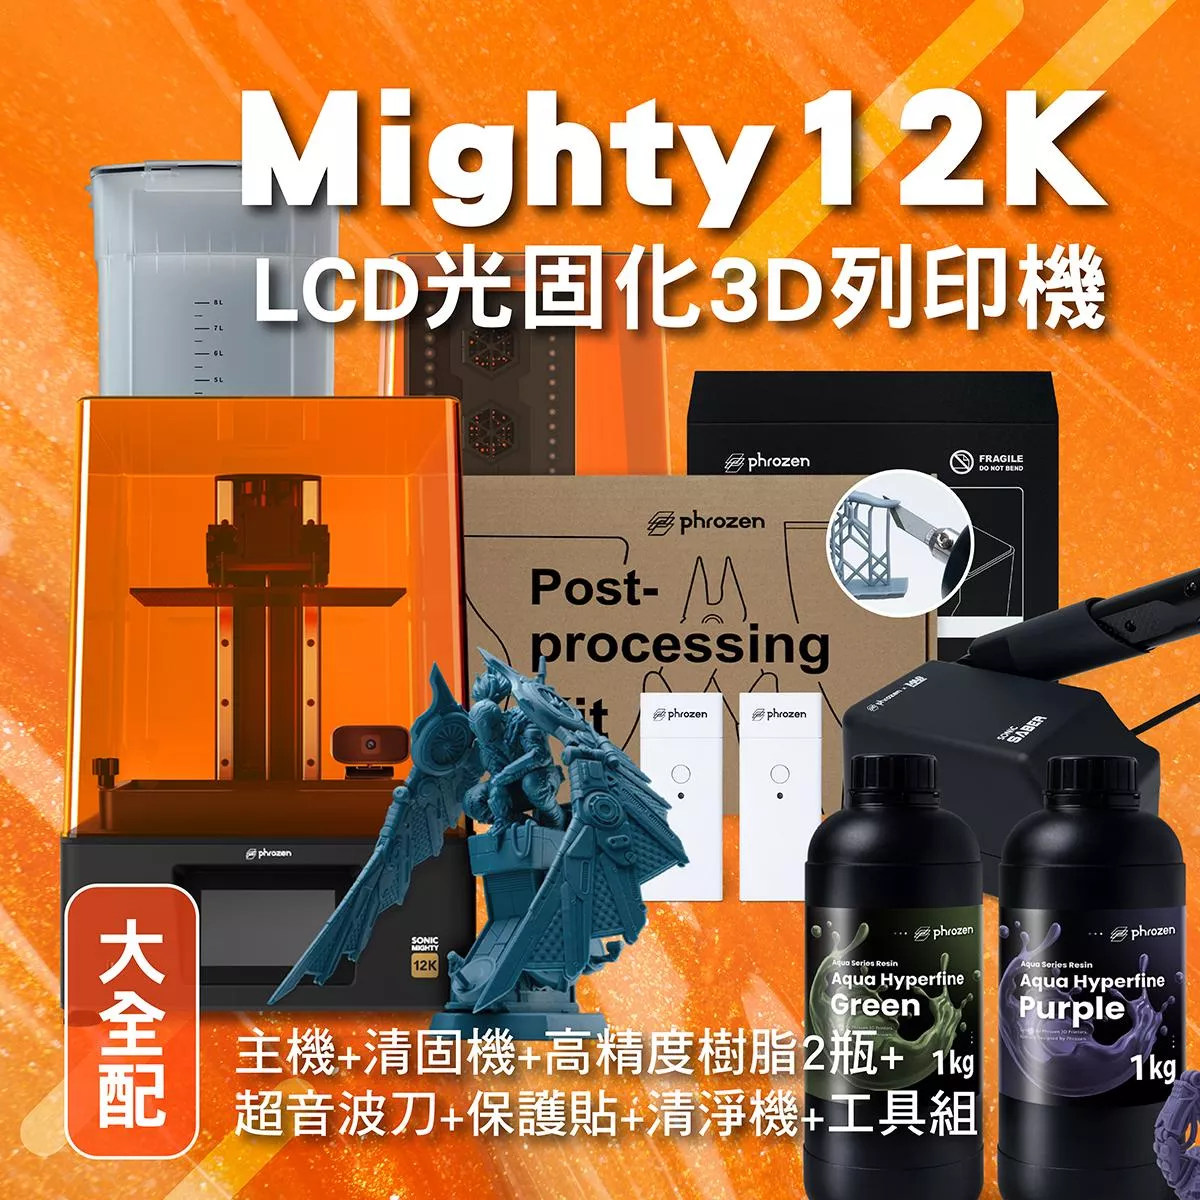 Mighty 12k 大全配組 (主機+清固機+高精度樹脂2瓶+超音波刀+保護貼+清淨機+工具組)